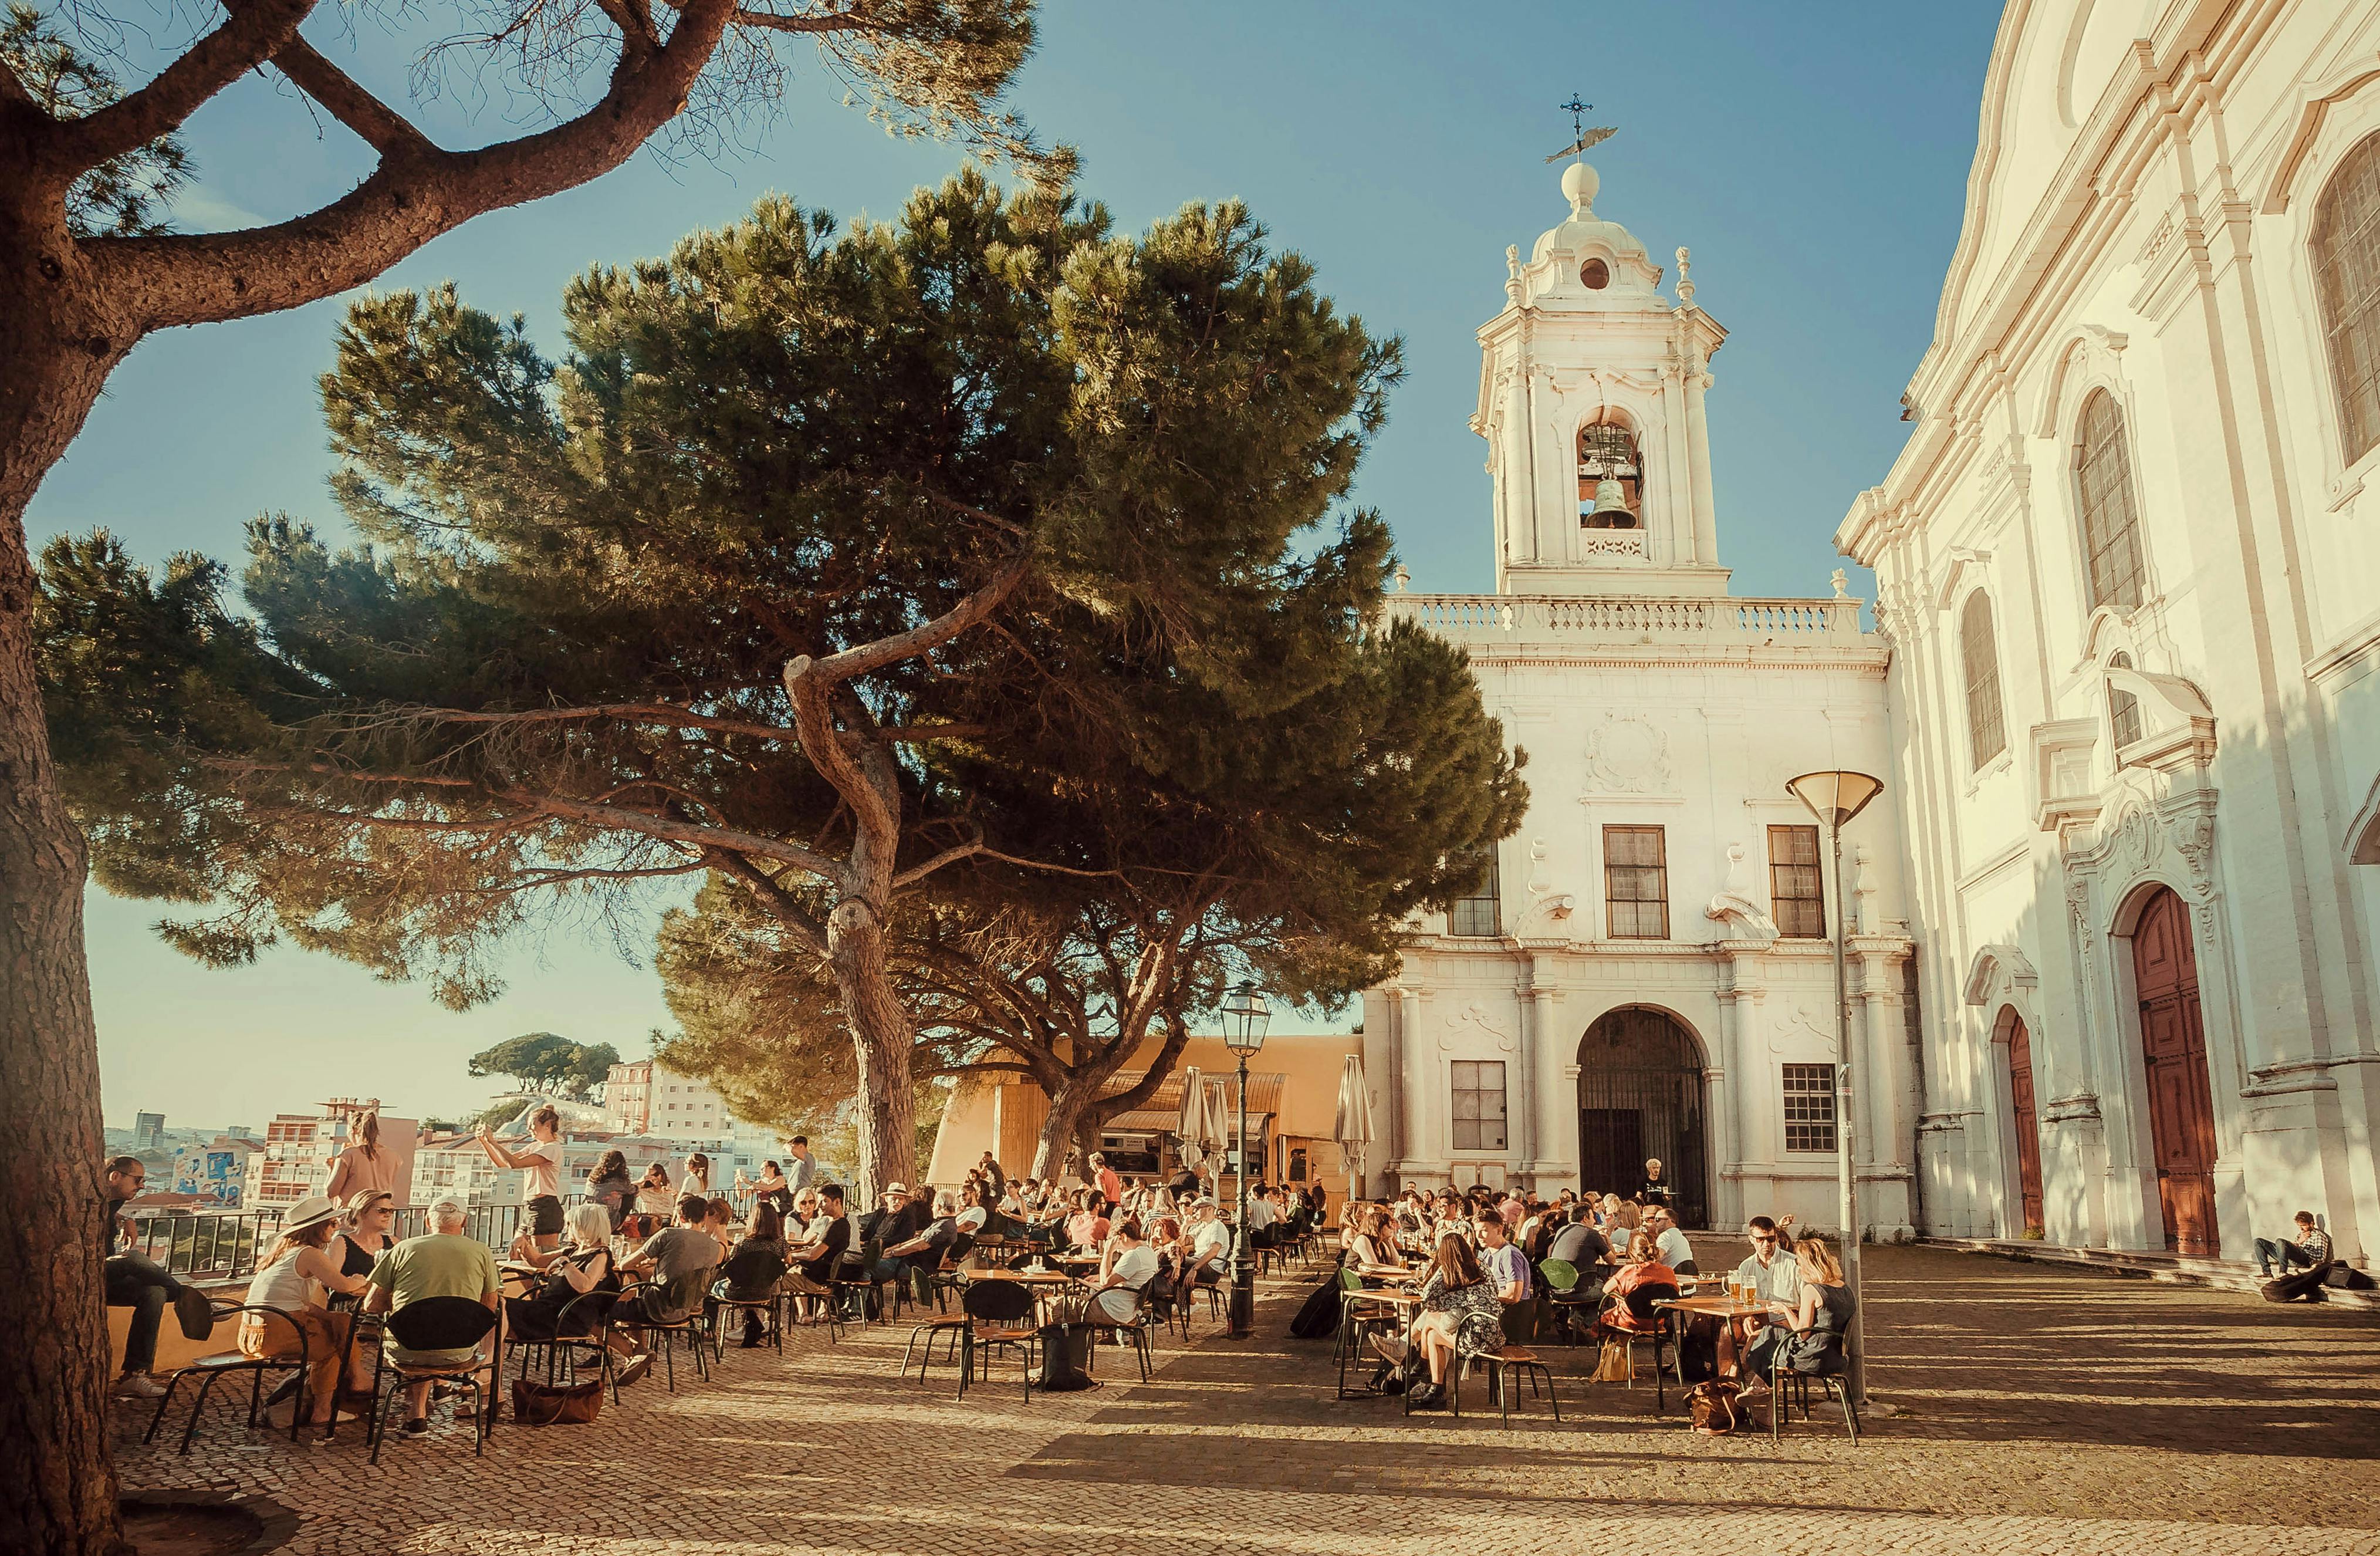 Lisbonne est une ville pleine de charme ancien et d'espaces animés